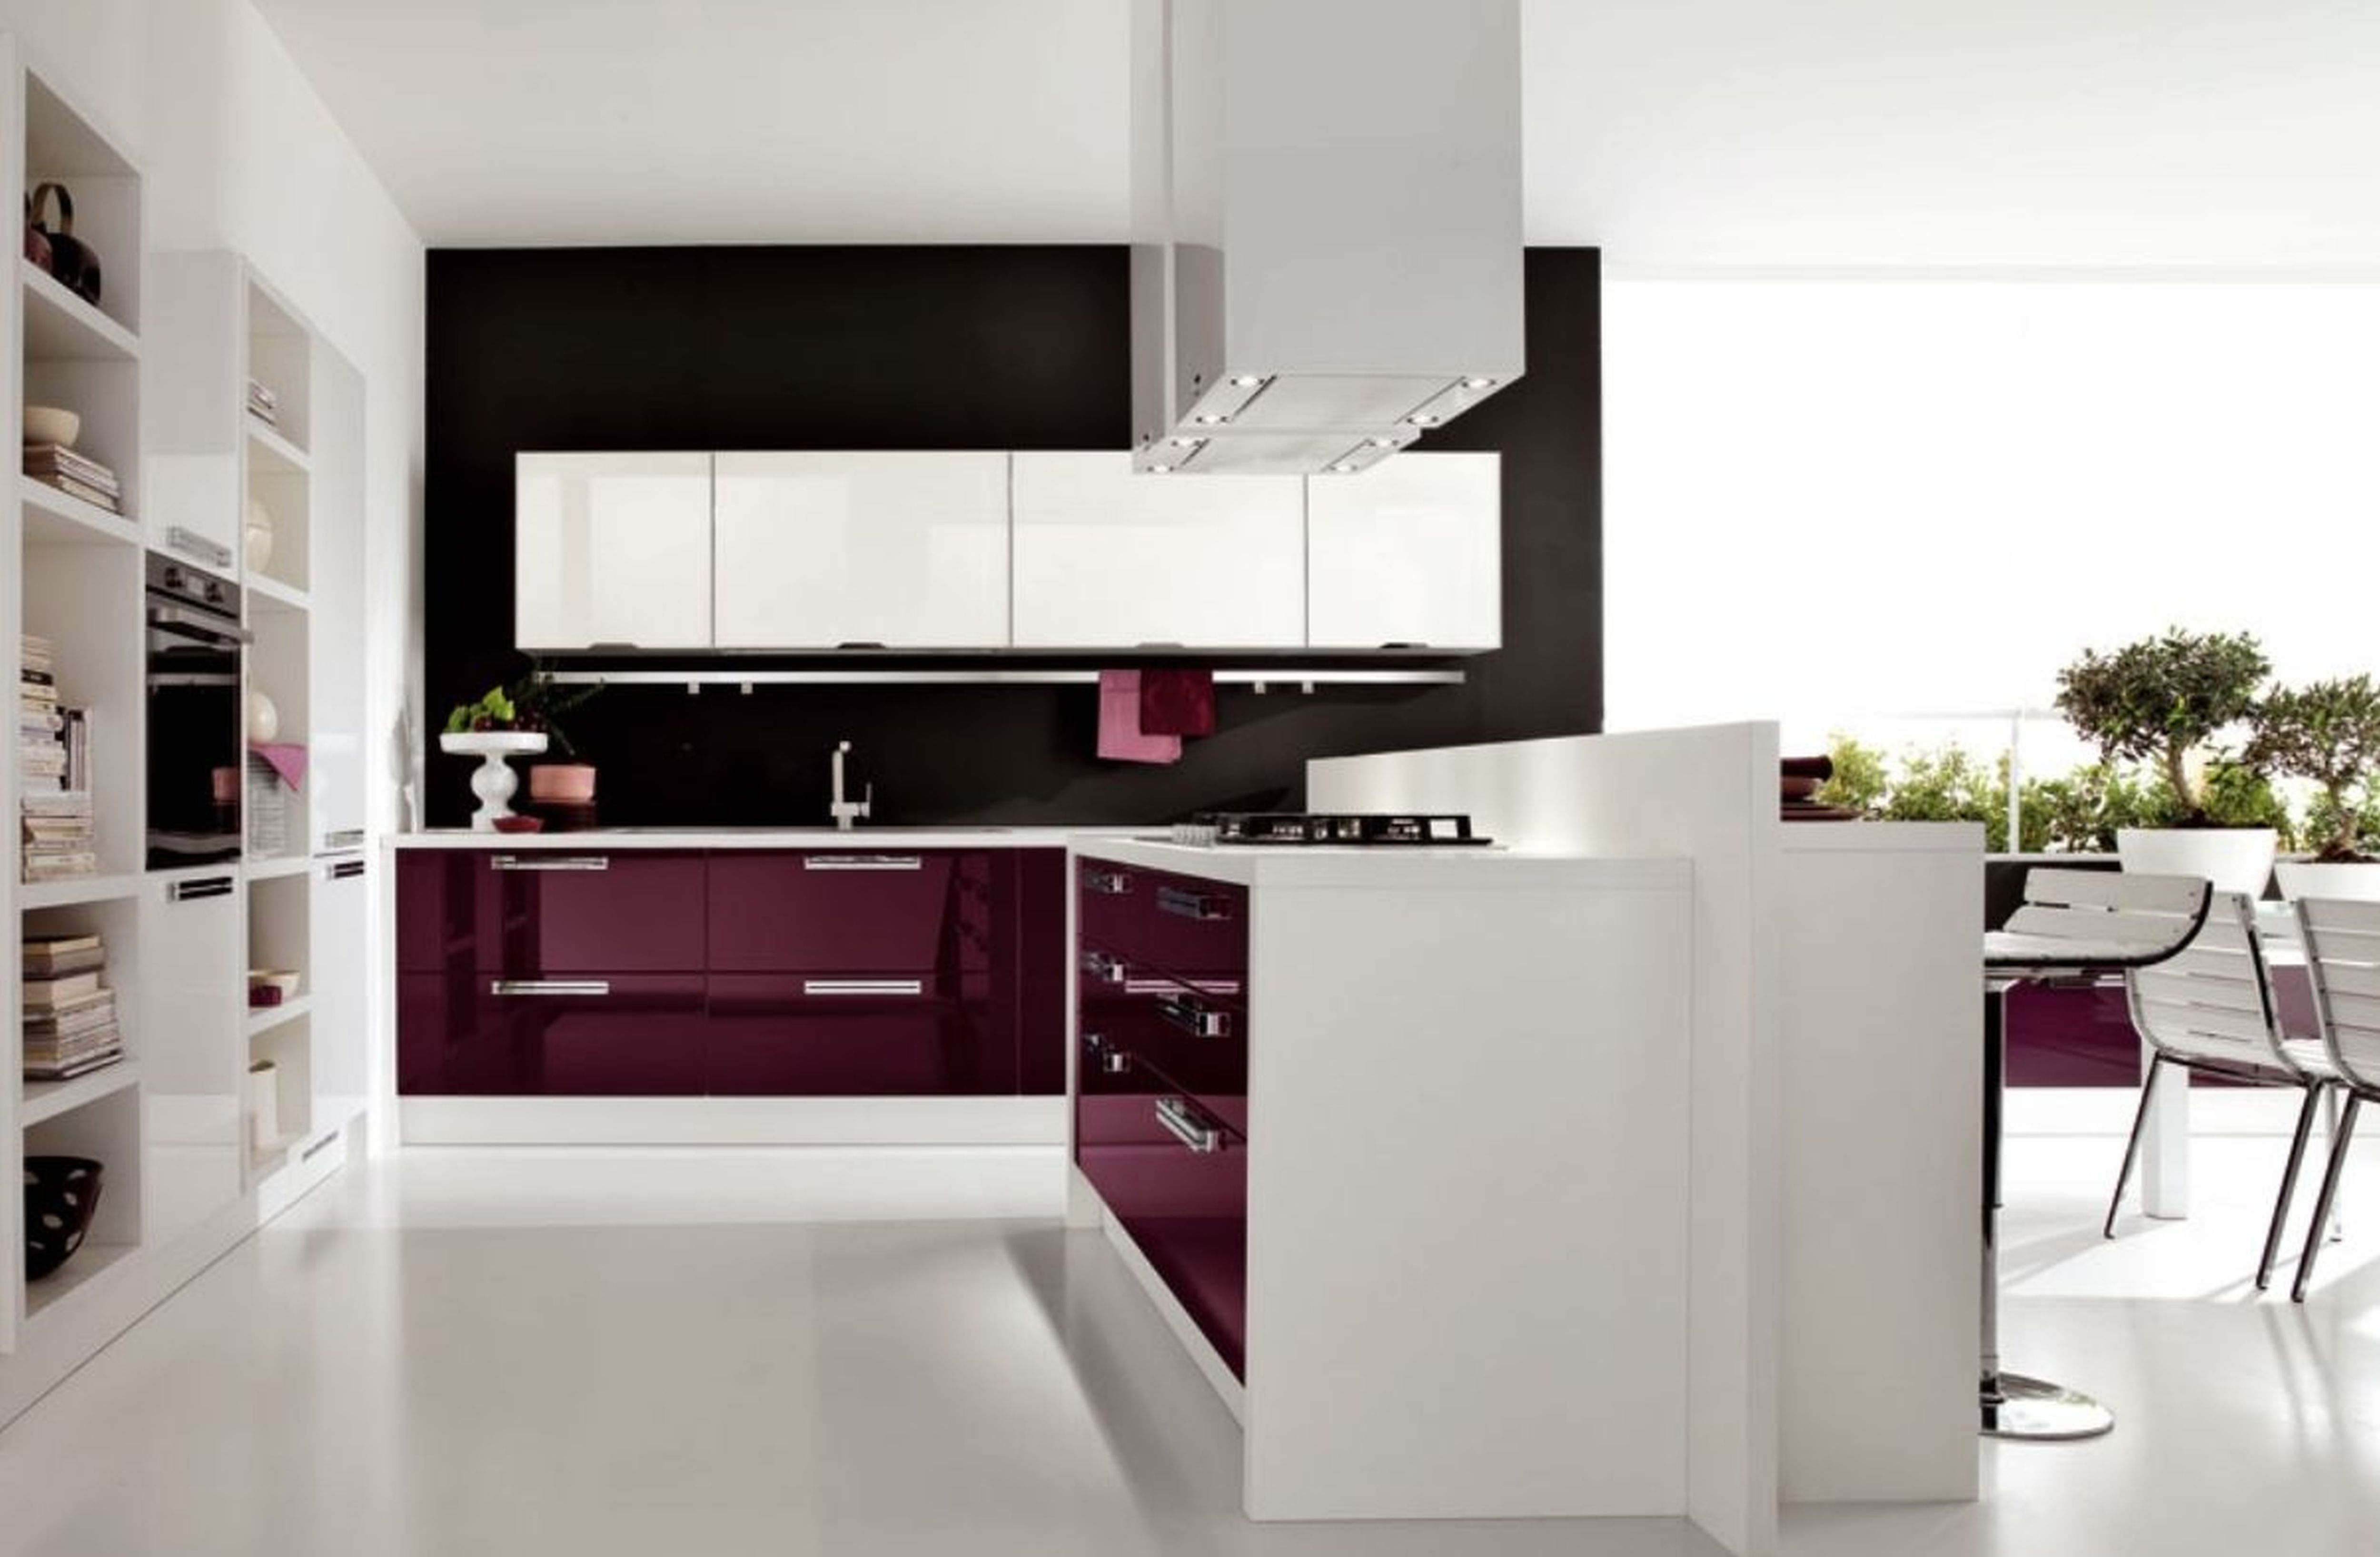 moderne küchentapeten designs,möbel,zimmer,küche,möbel,innenarchitektur